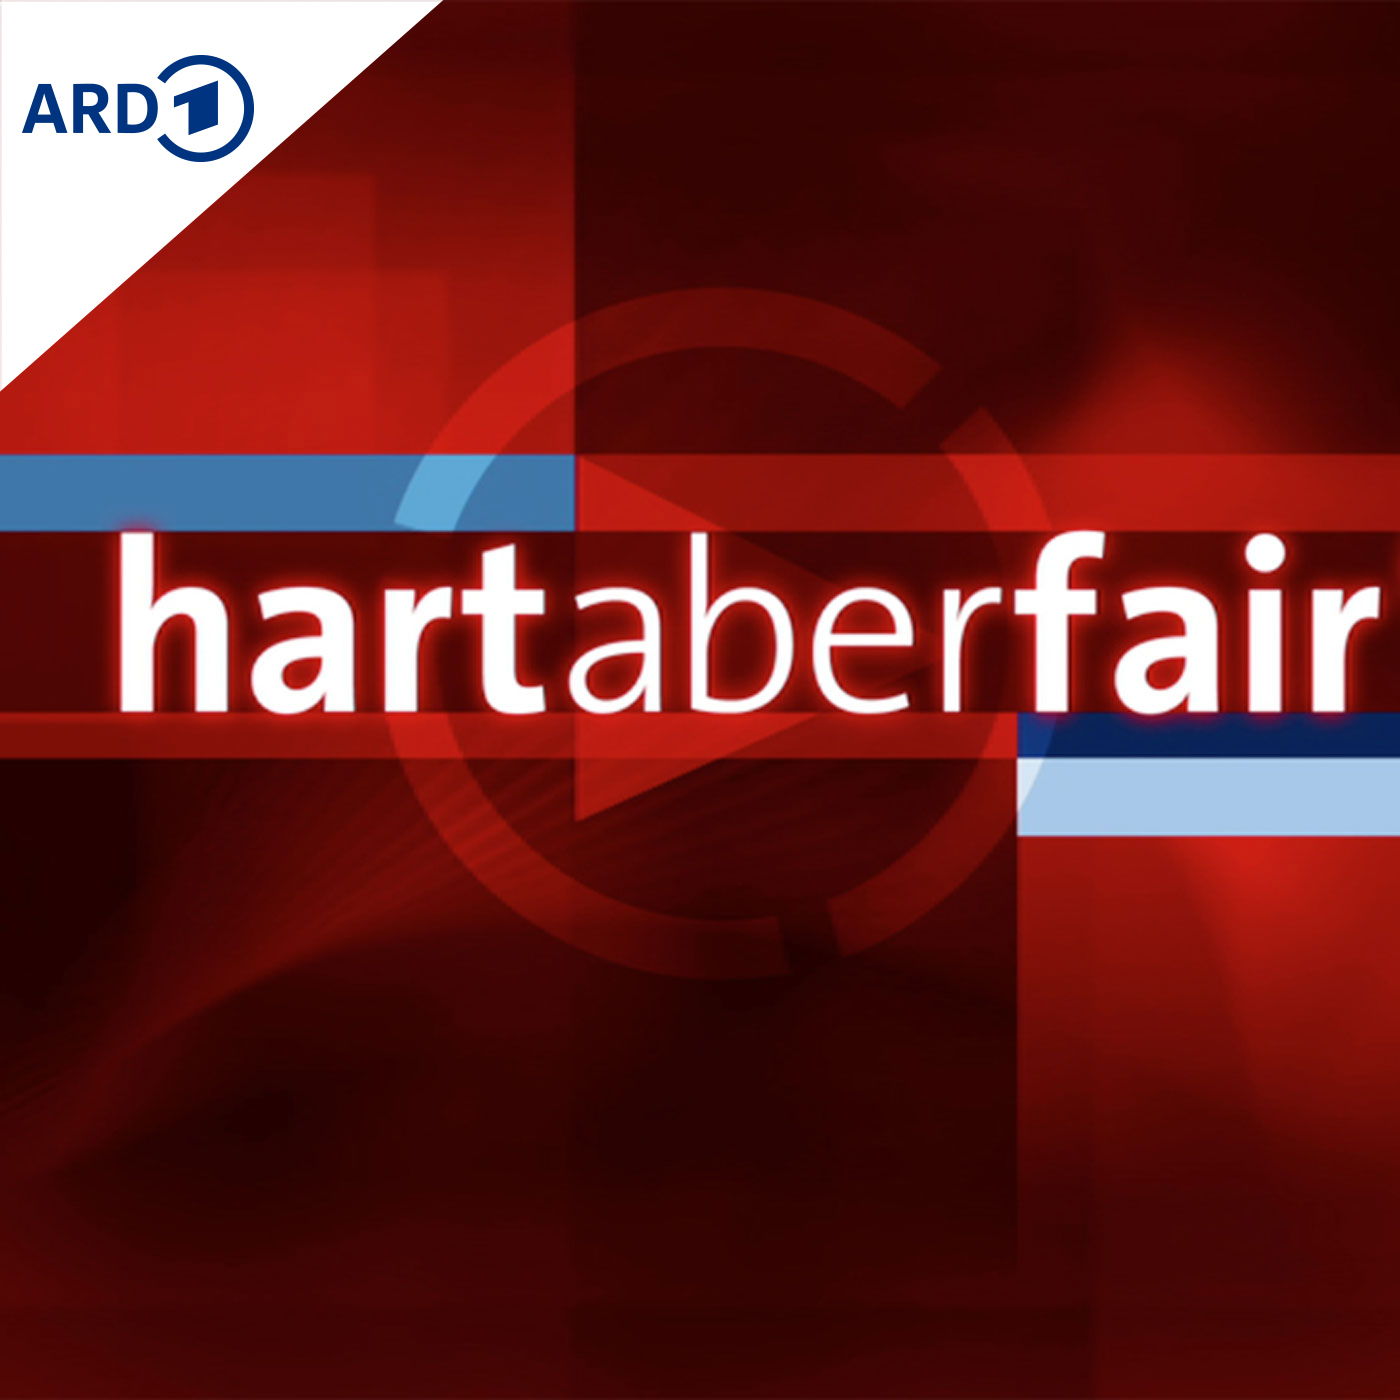 Hart aber fair logo